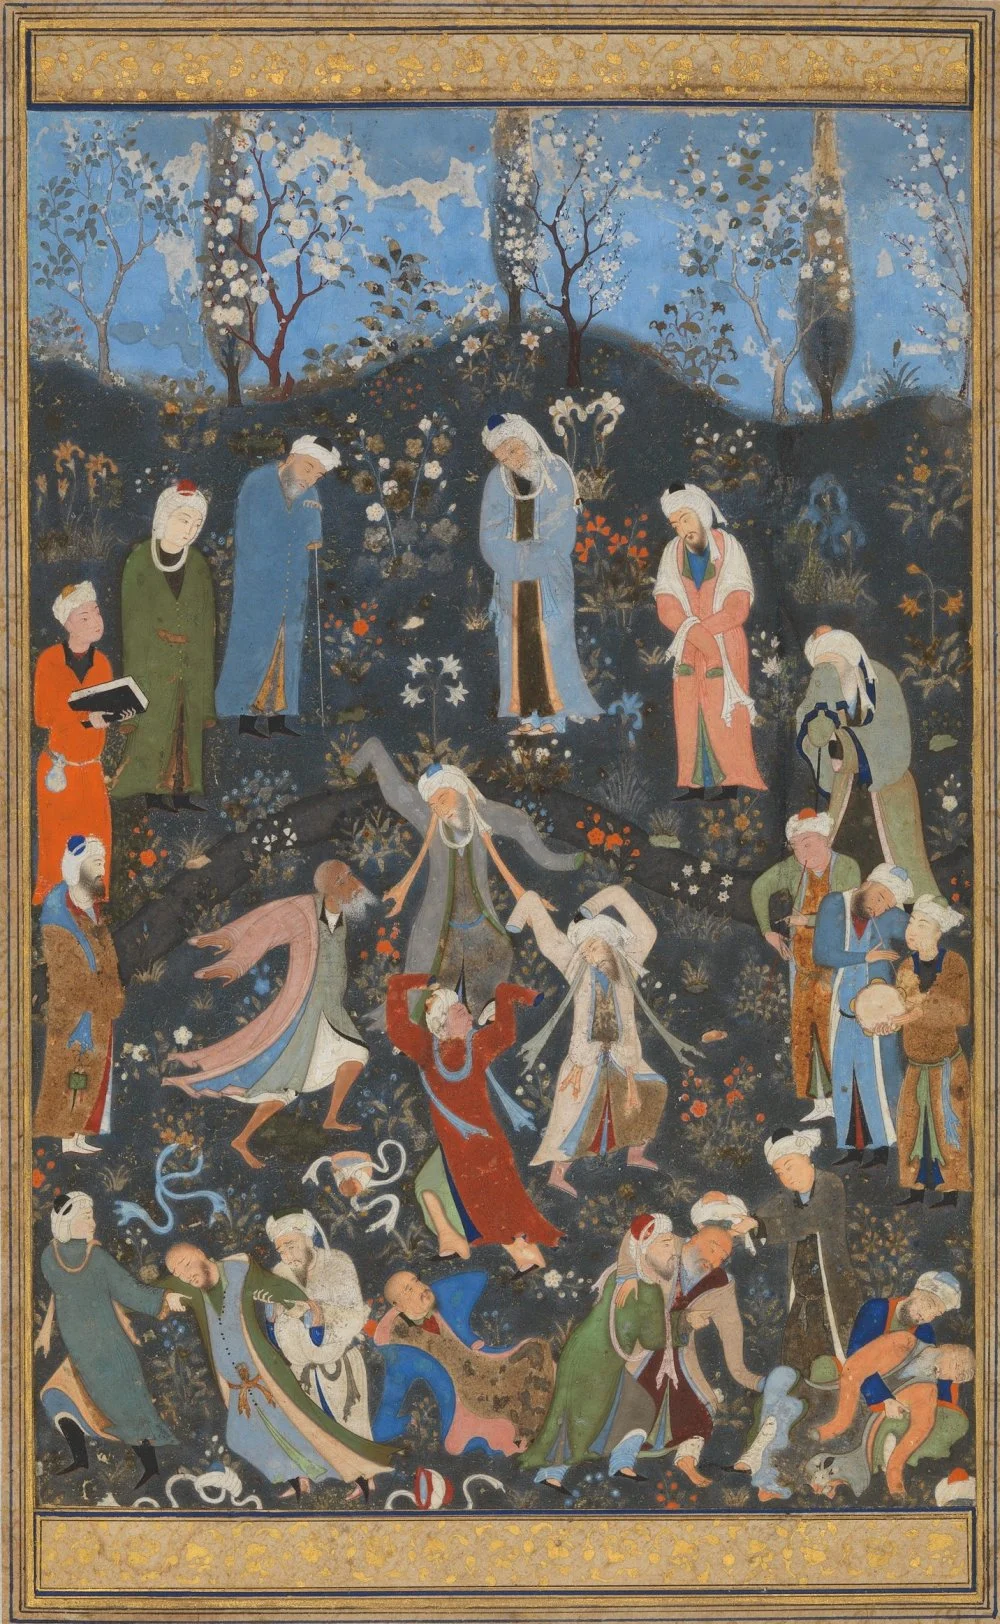 Танцующие дервиши, страница из дивана Хафиза. Миниатюра конца 15 века/Музей искусств Метрополитен, Нью-Йорк, США